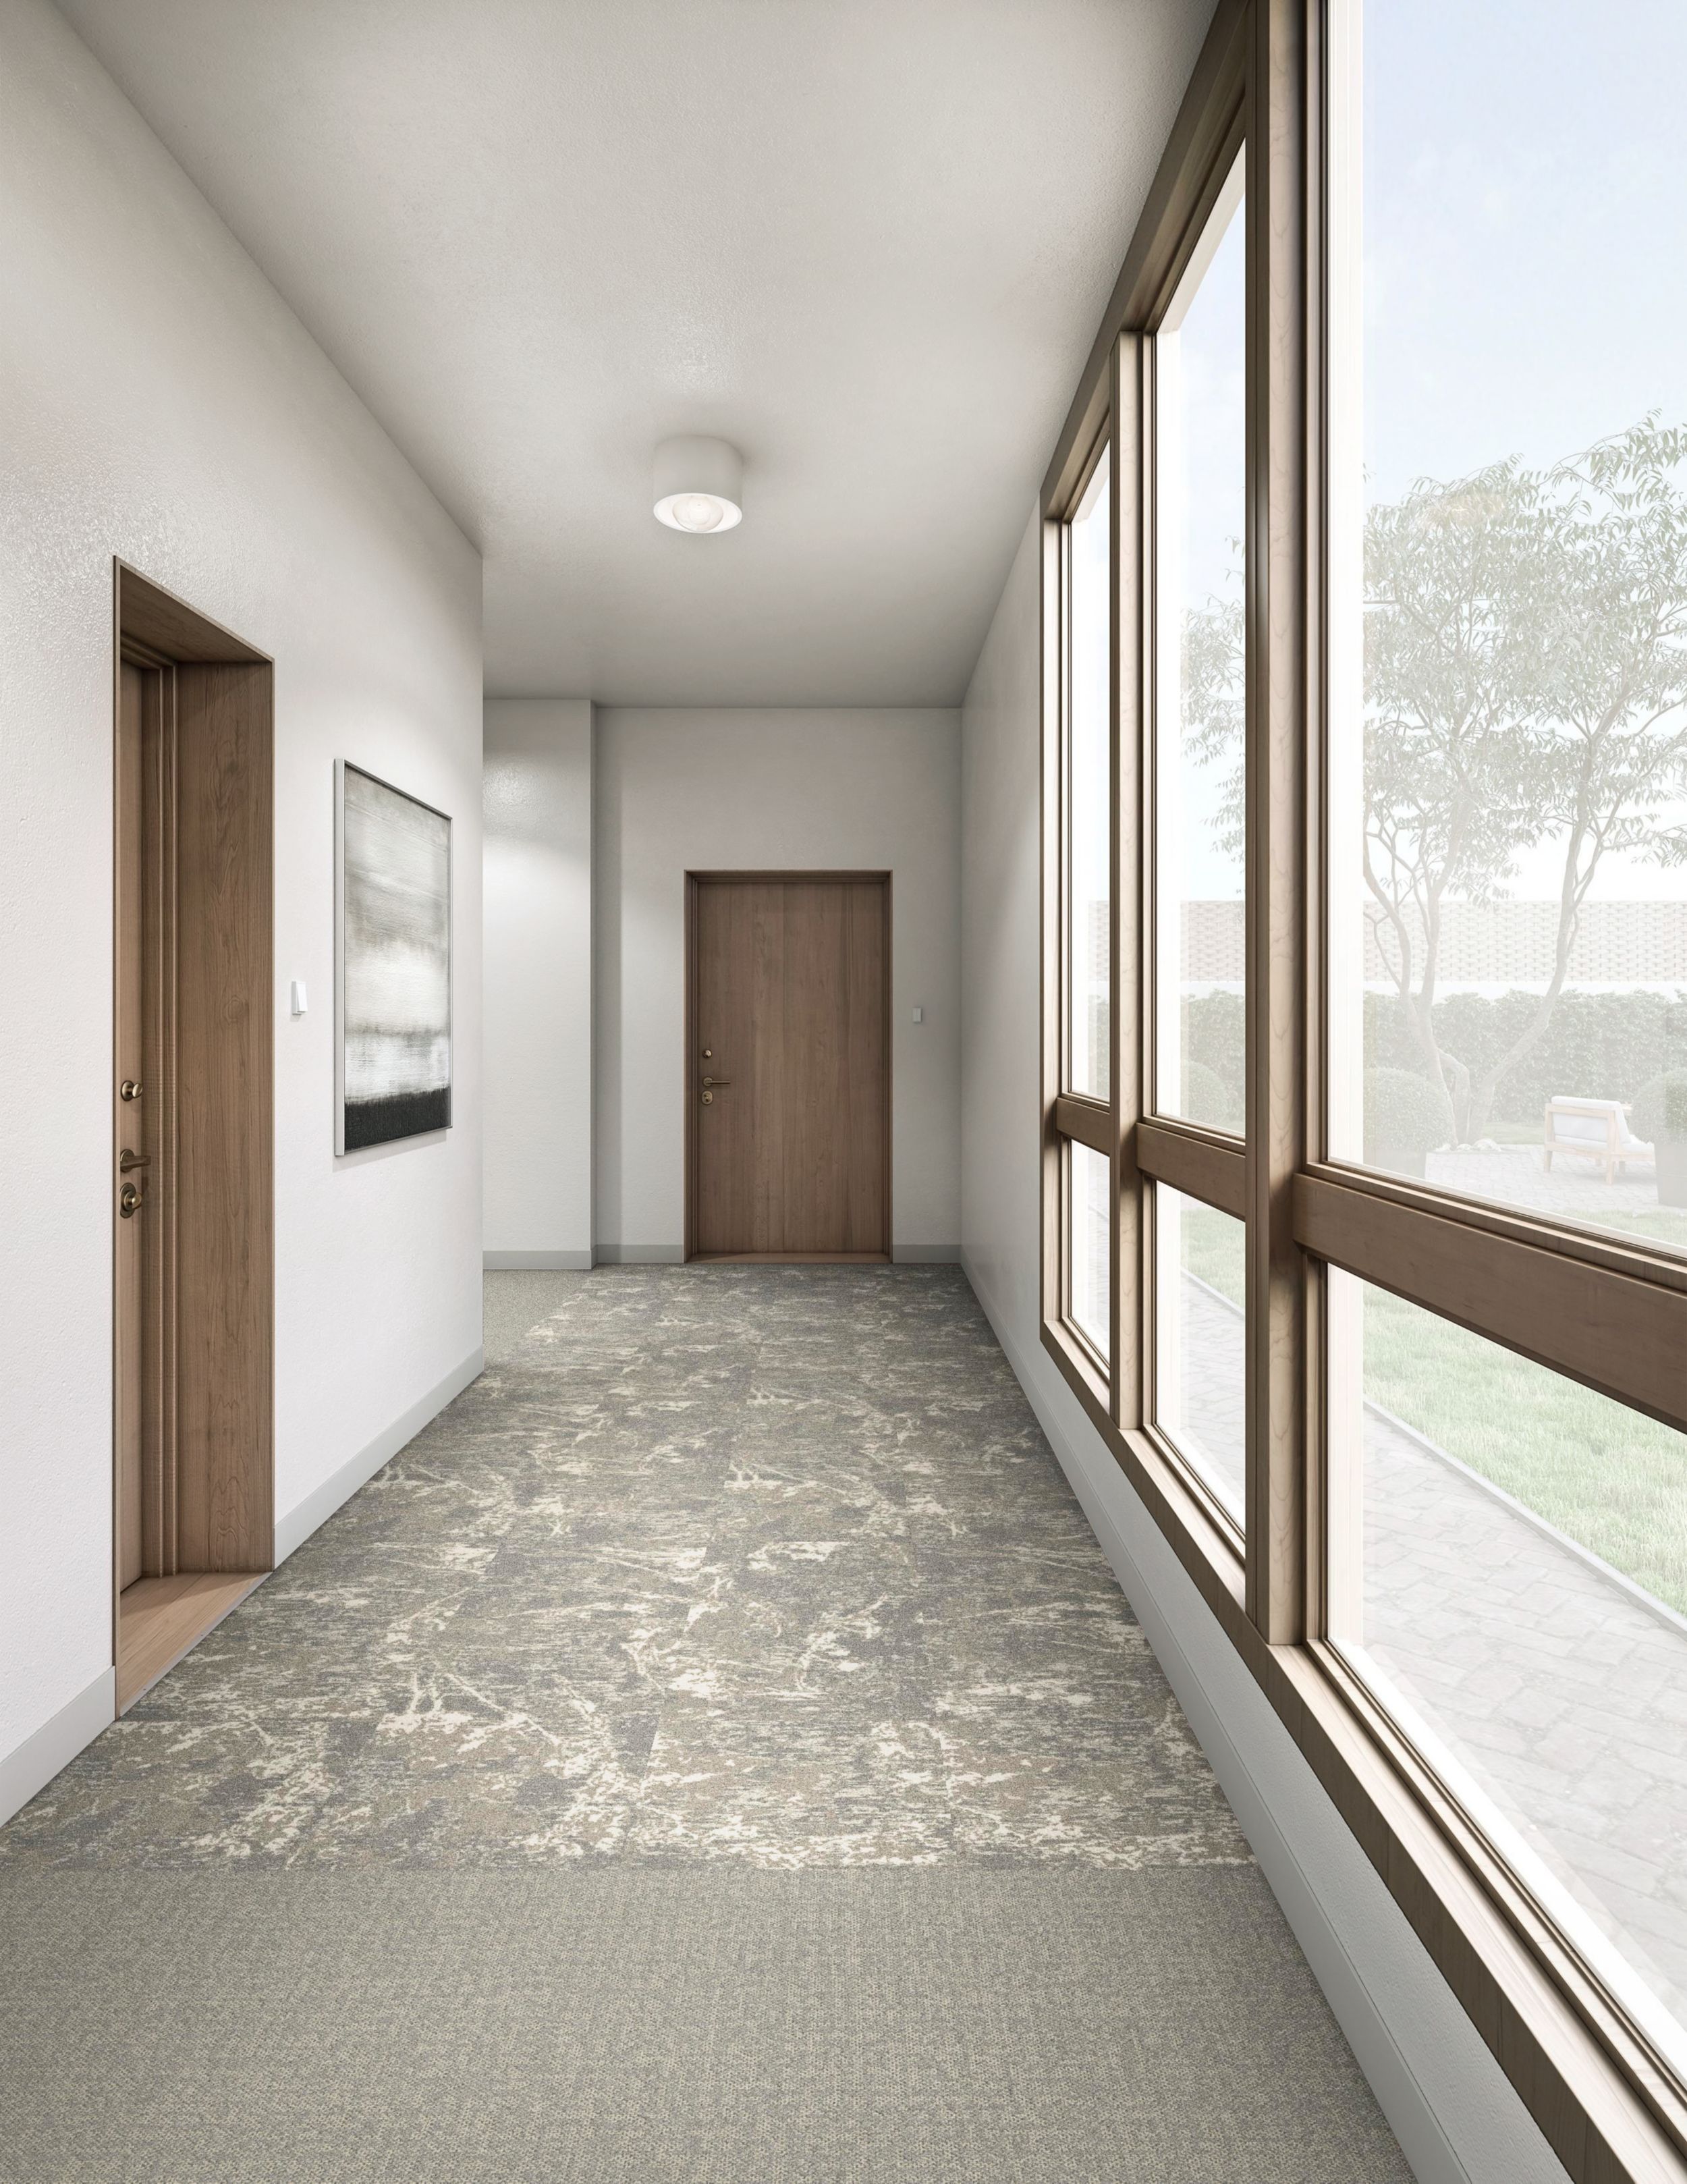 Interface Bouquet and Mirano plank carpet tile in senior housing corridor imagen número 9